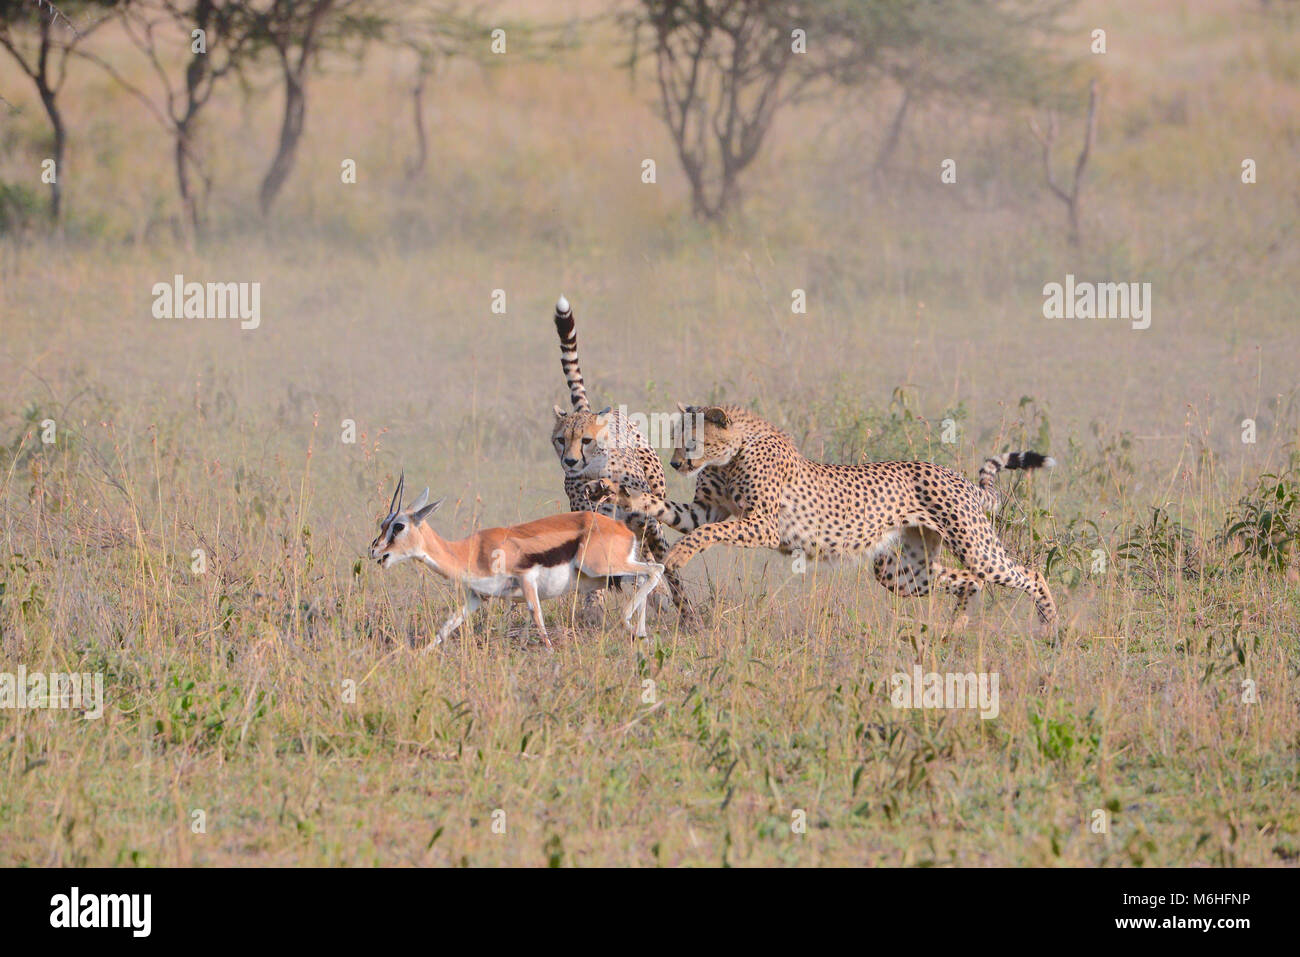 Le Parc National du Serengeti en Tanzanie, est un des plus spectaculaires des destinations de la faune sur terre. Sequnce chasse frères guépard gazelle tuer Banque D'Images